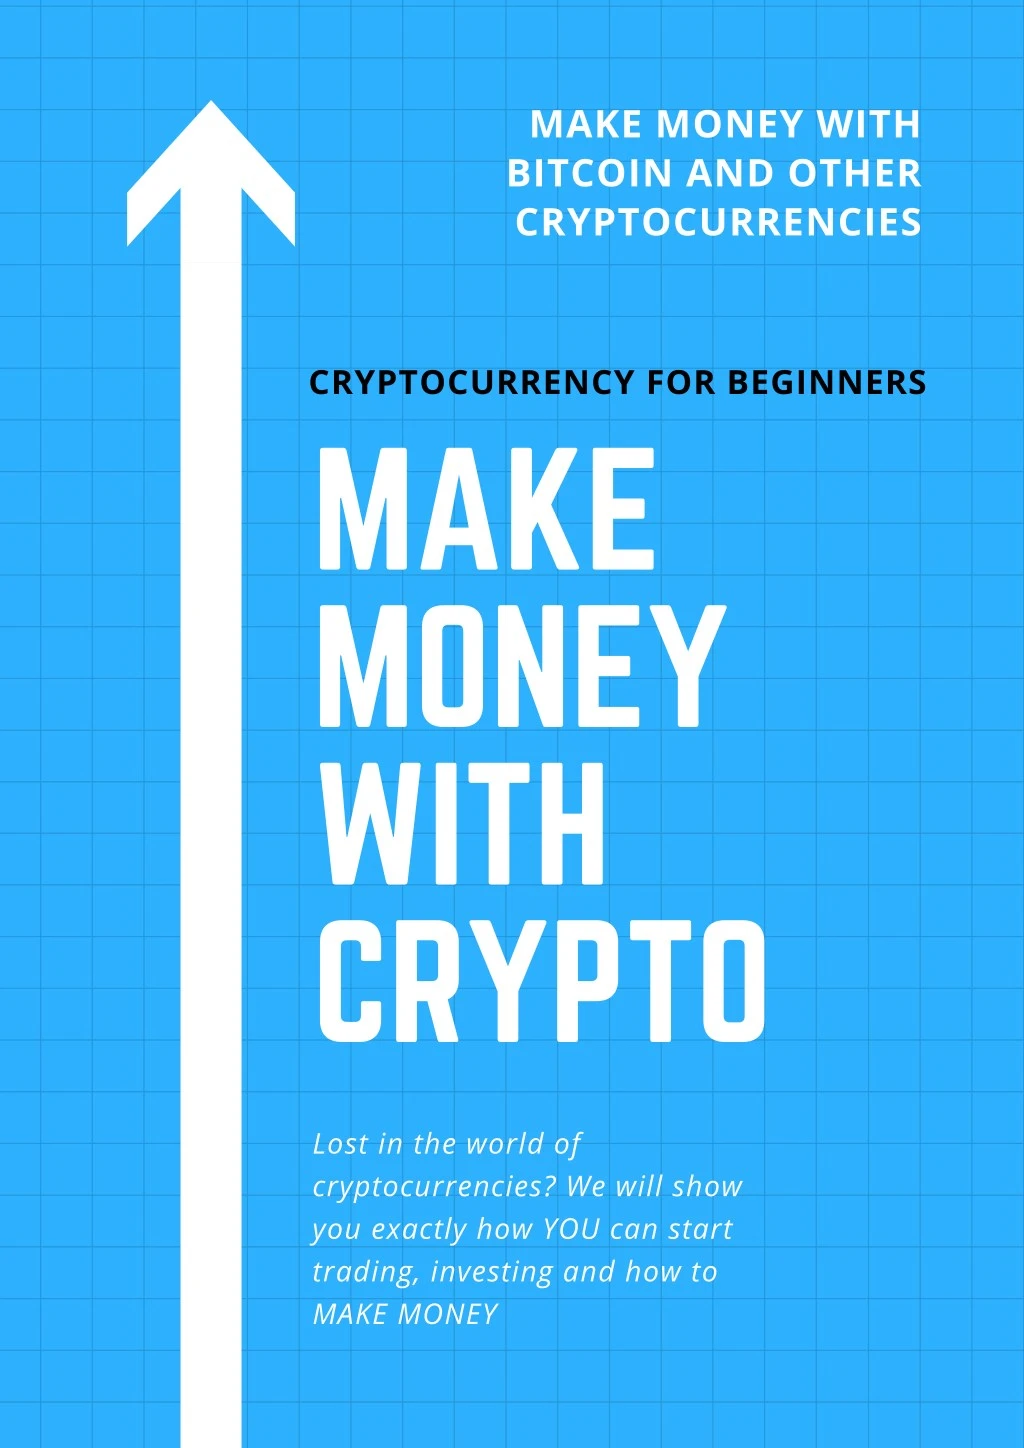 how to make money with crypto.com